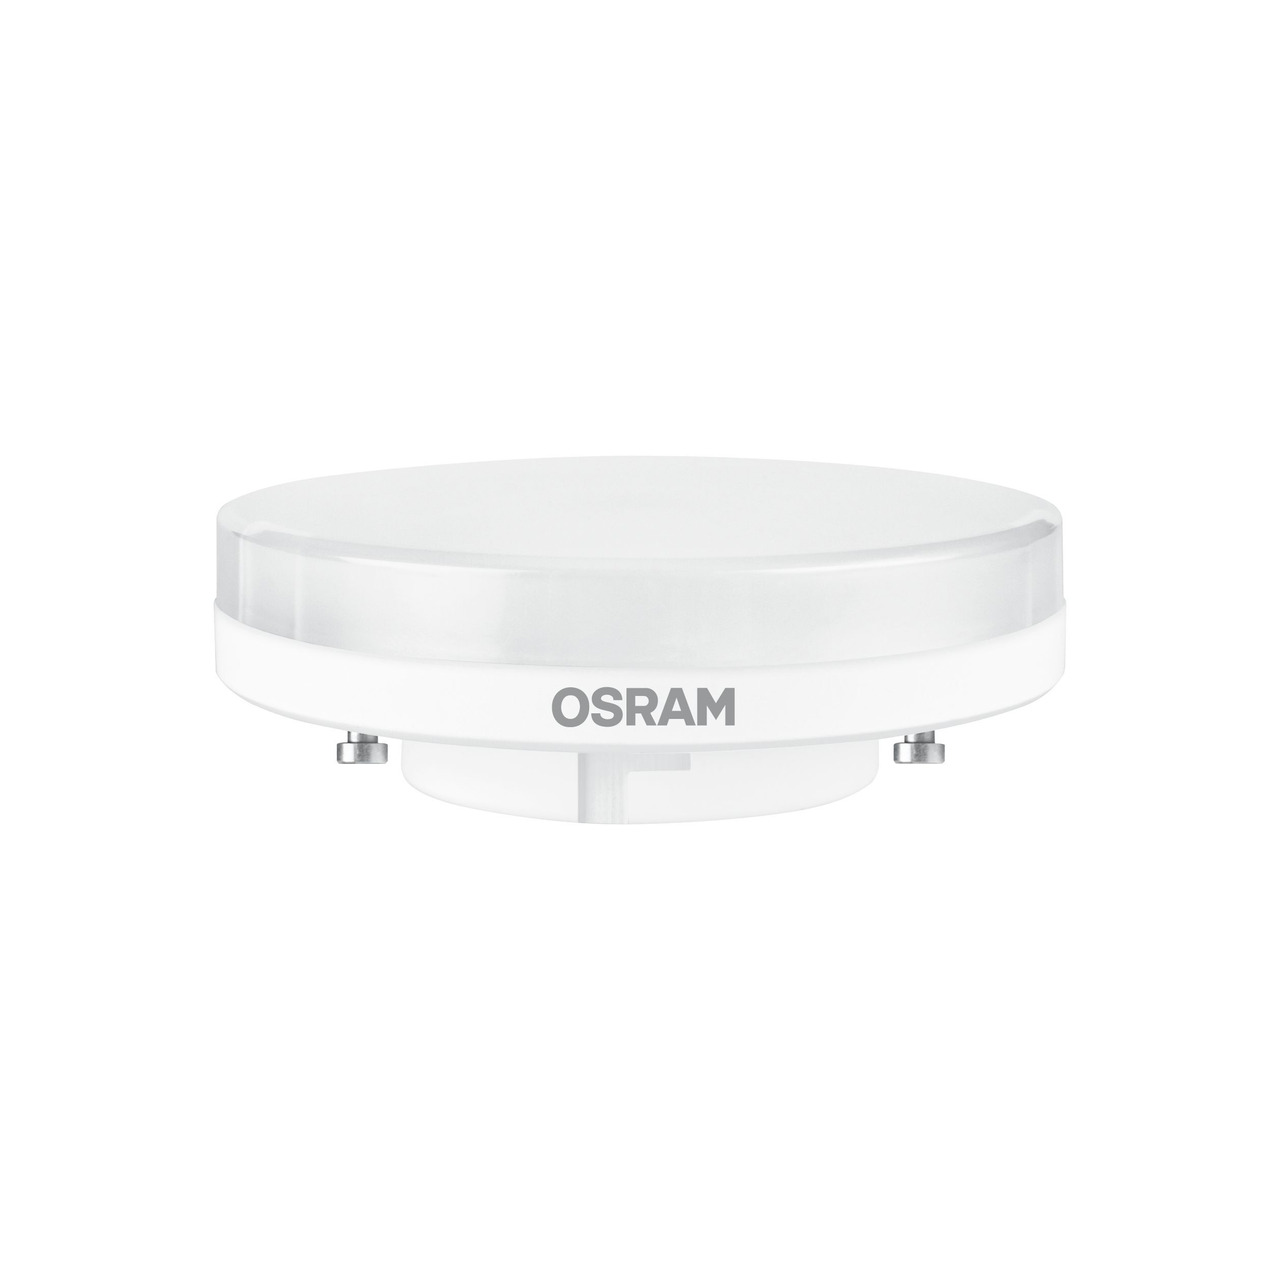 OSRAM 4-9-W-GX53-LED-Lampe- neutralweiss